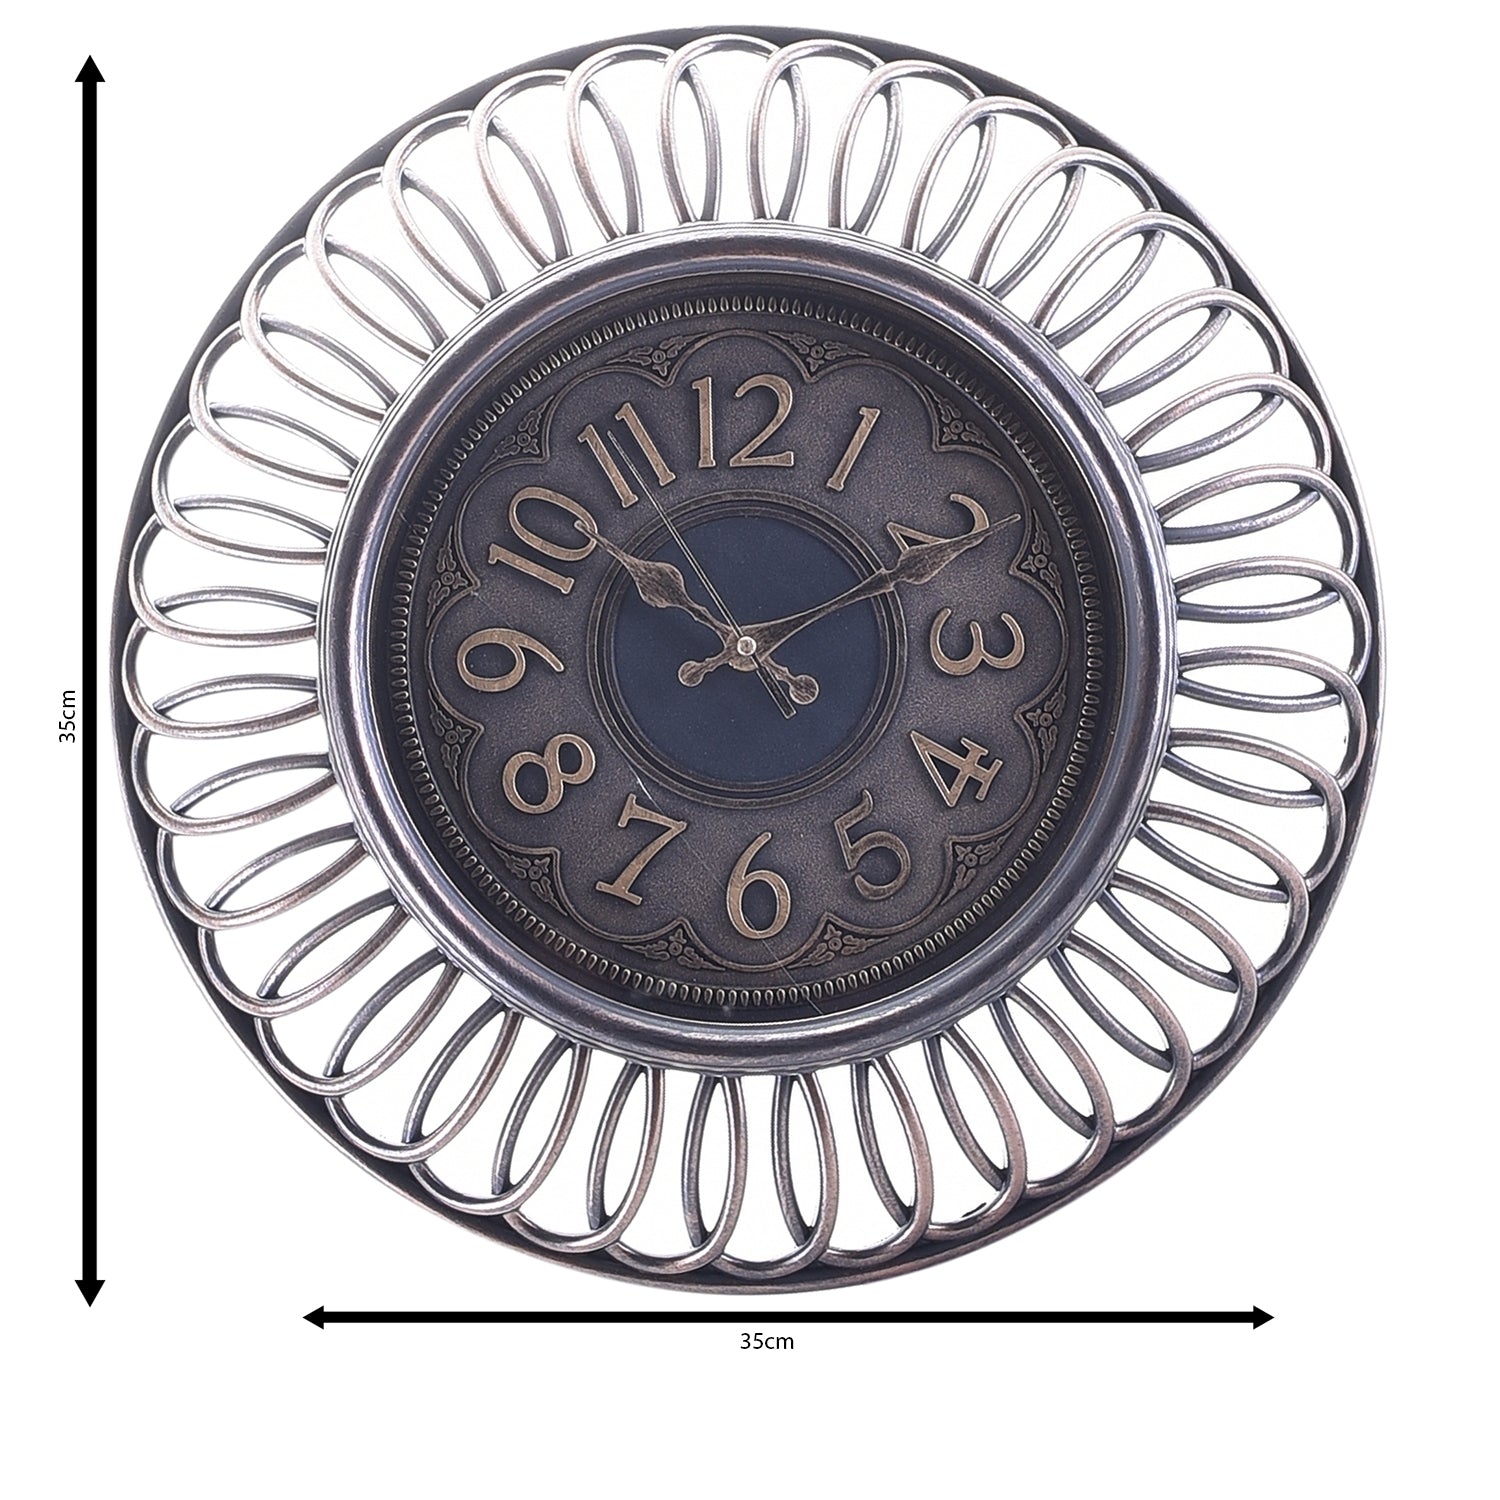 Premium Antique Design Analog Wall Clock 17